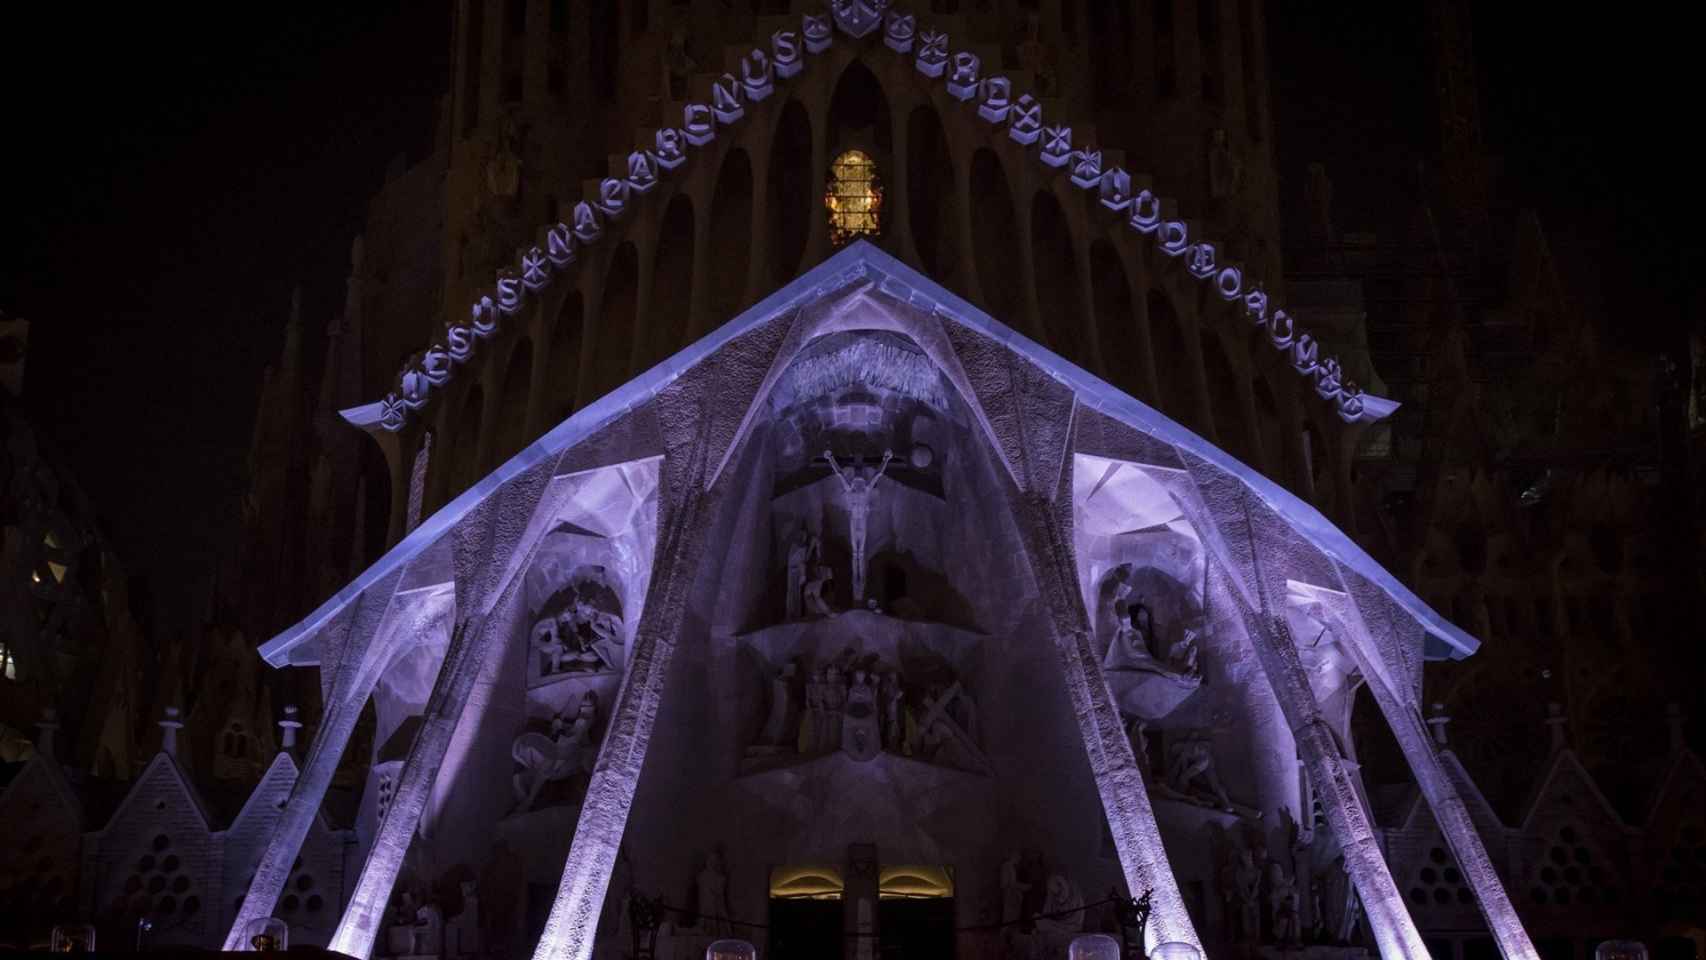 Fachada de la Pasión de la Sagrada Familia, iluminada por Semana Santa